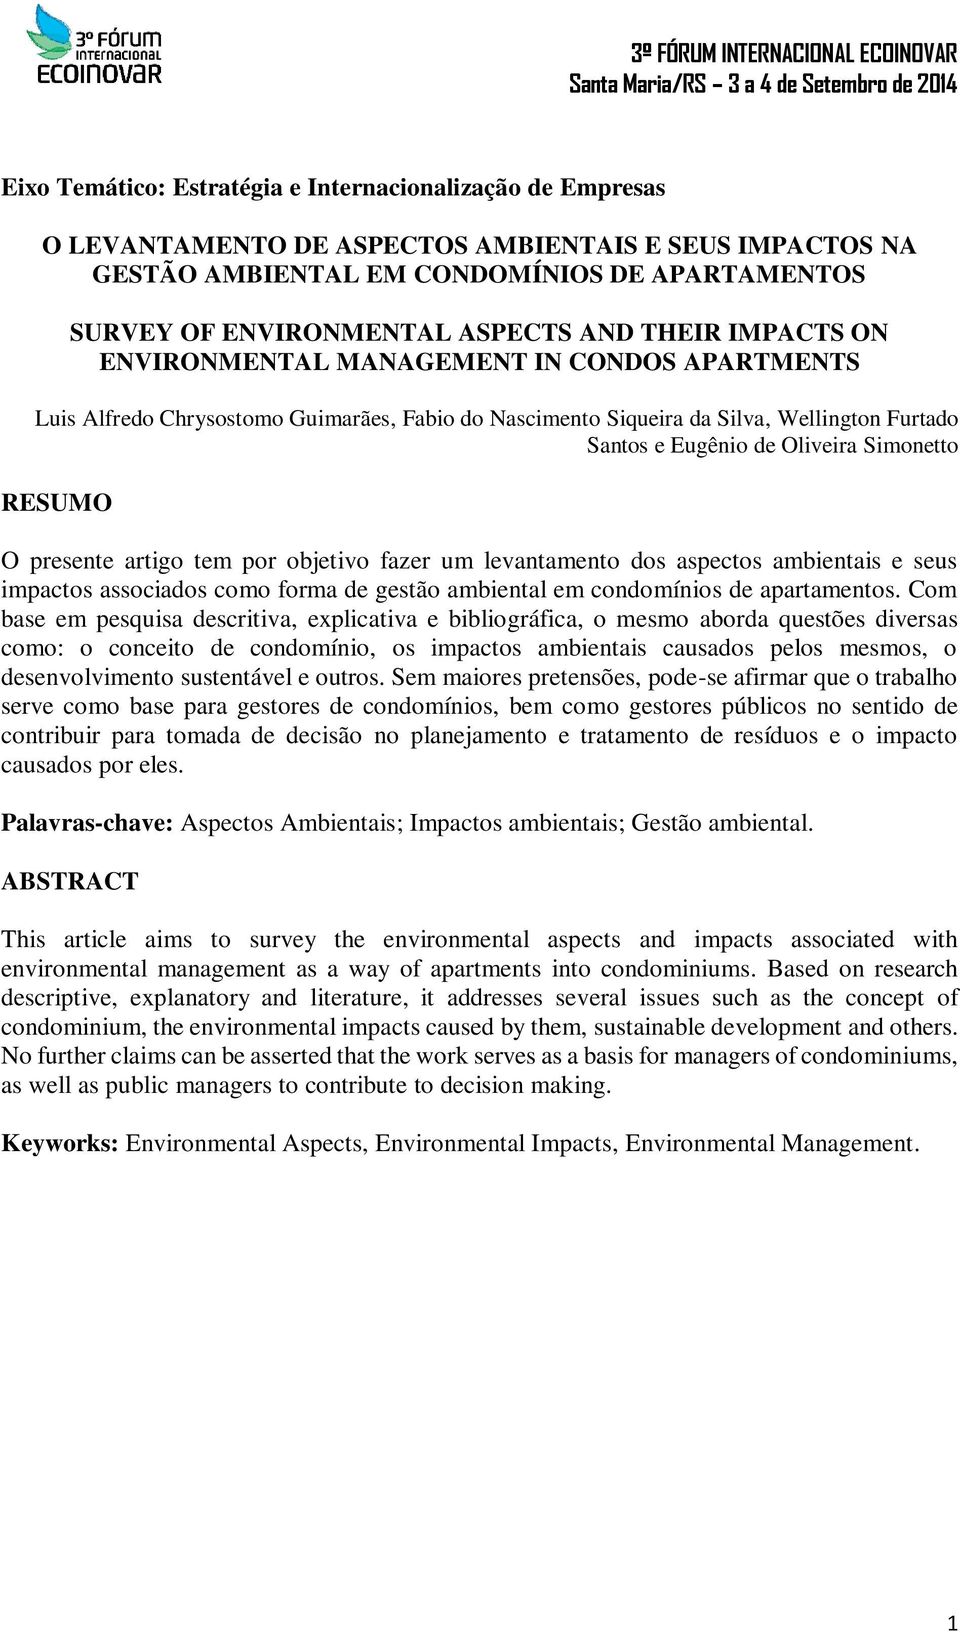 RESUMO O presente artigo tem por objetivo fazer um levantamento dos aspectos ambientais e seus impactos associados como forma de gestão ambiental em condomínios de apartamentos.